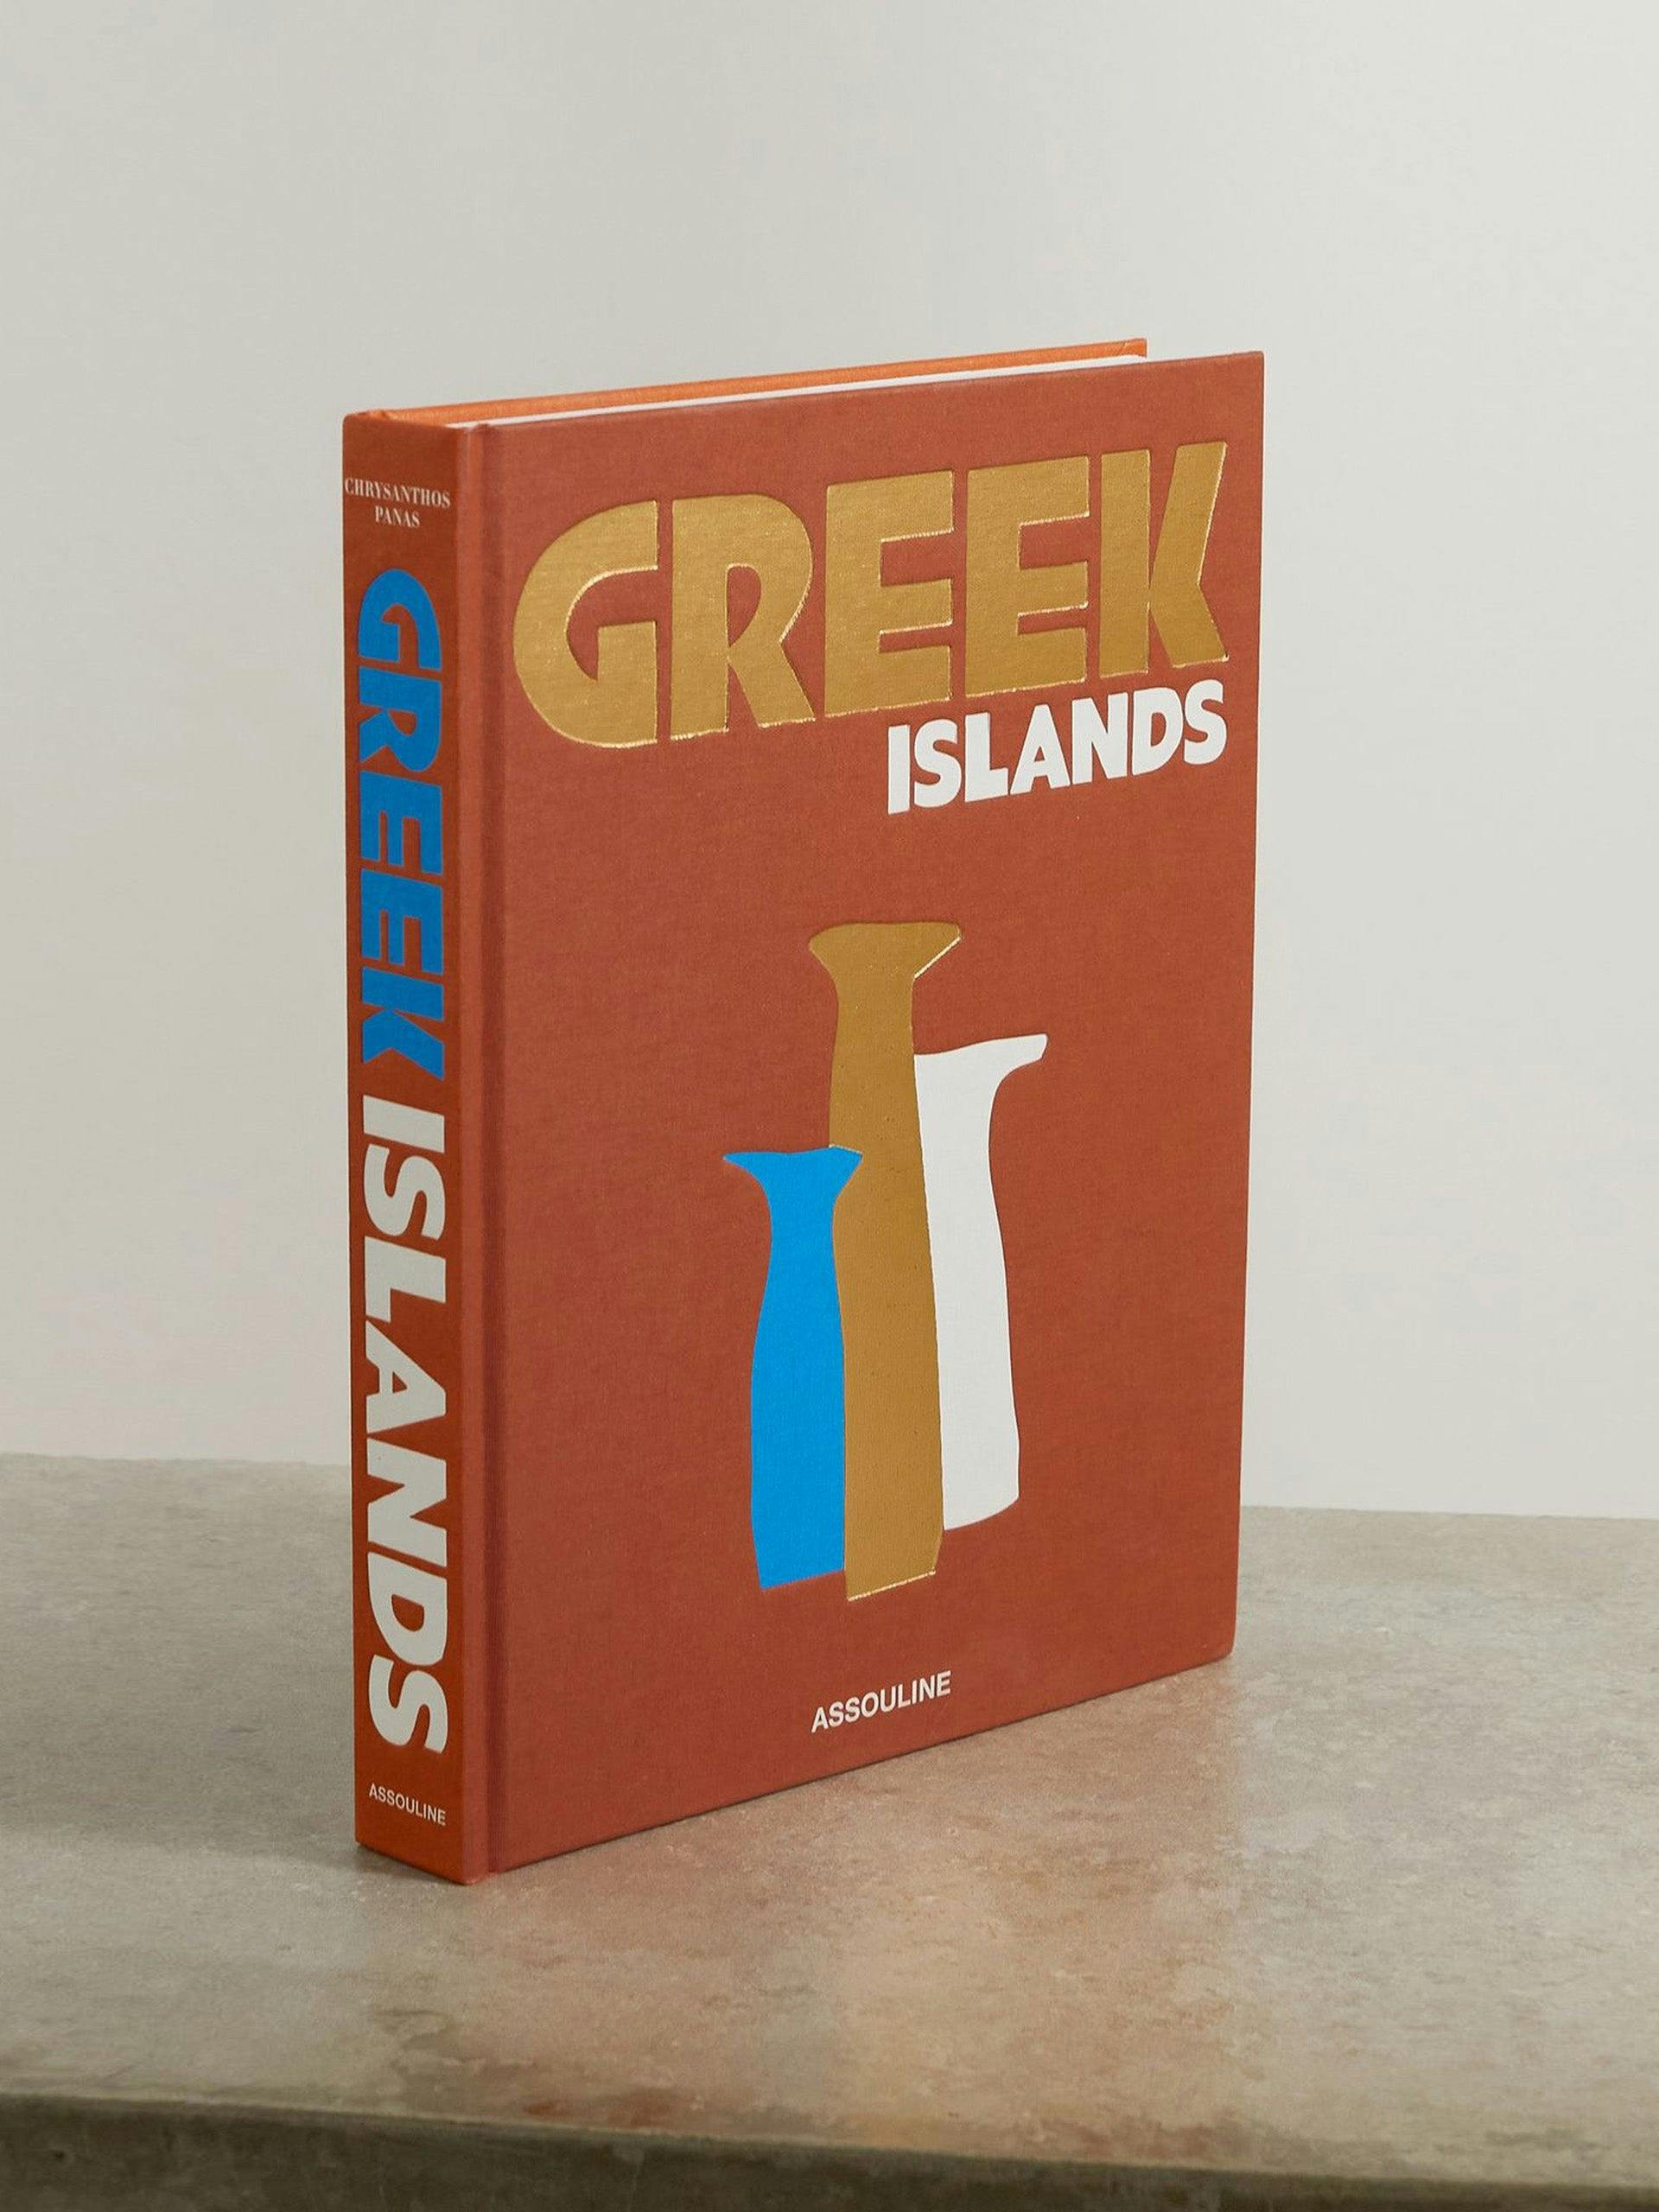 'Greek Islands' by Chrysanthos Panas hardcover book